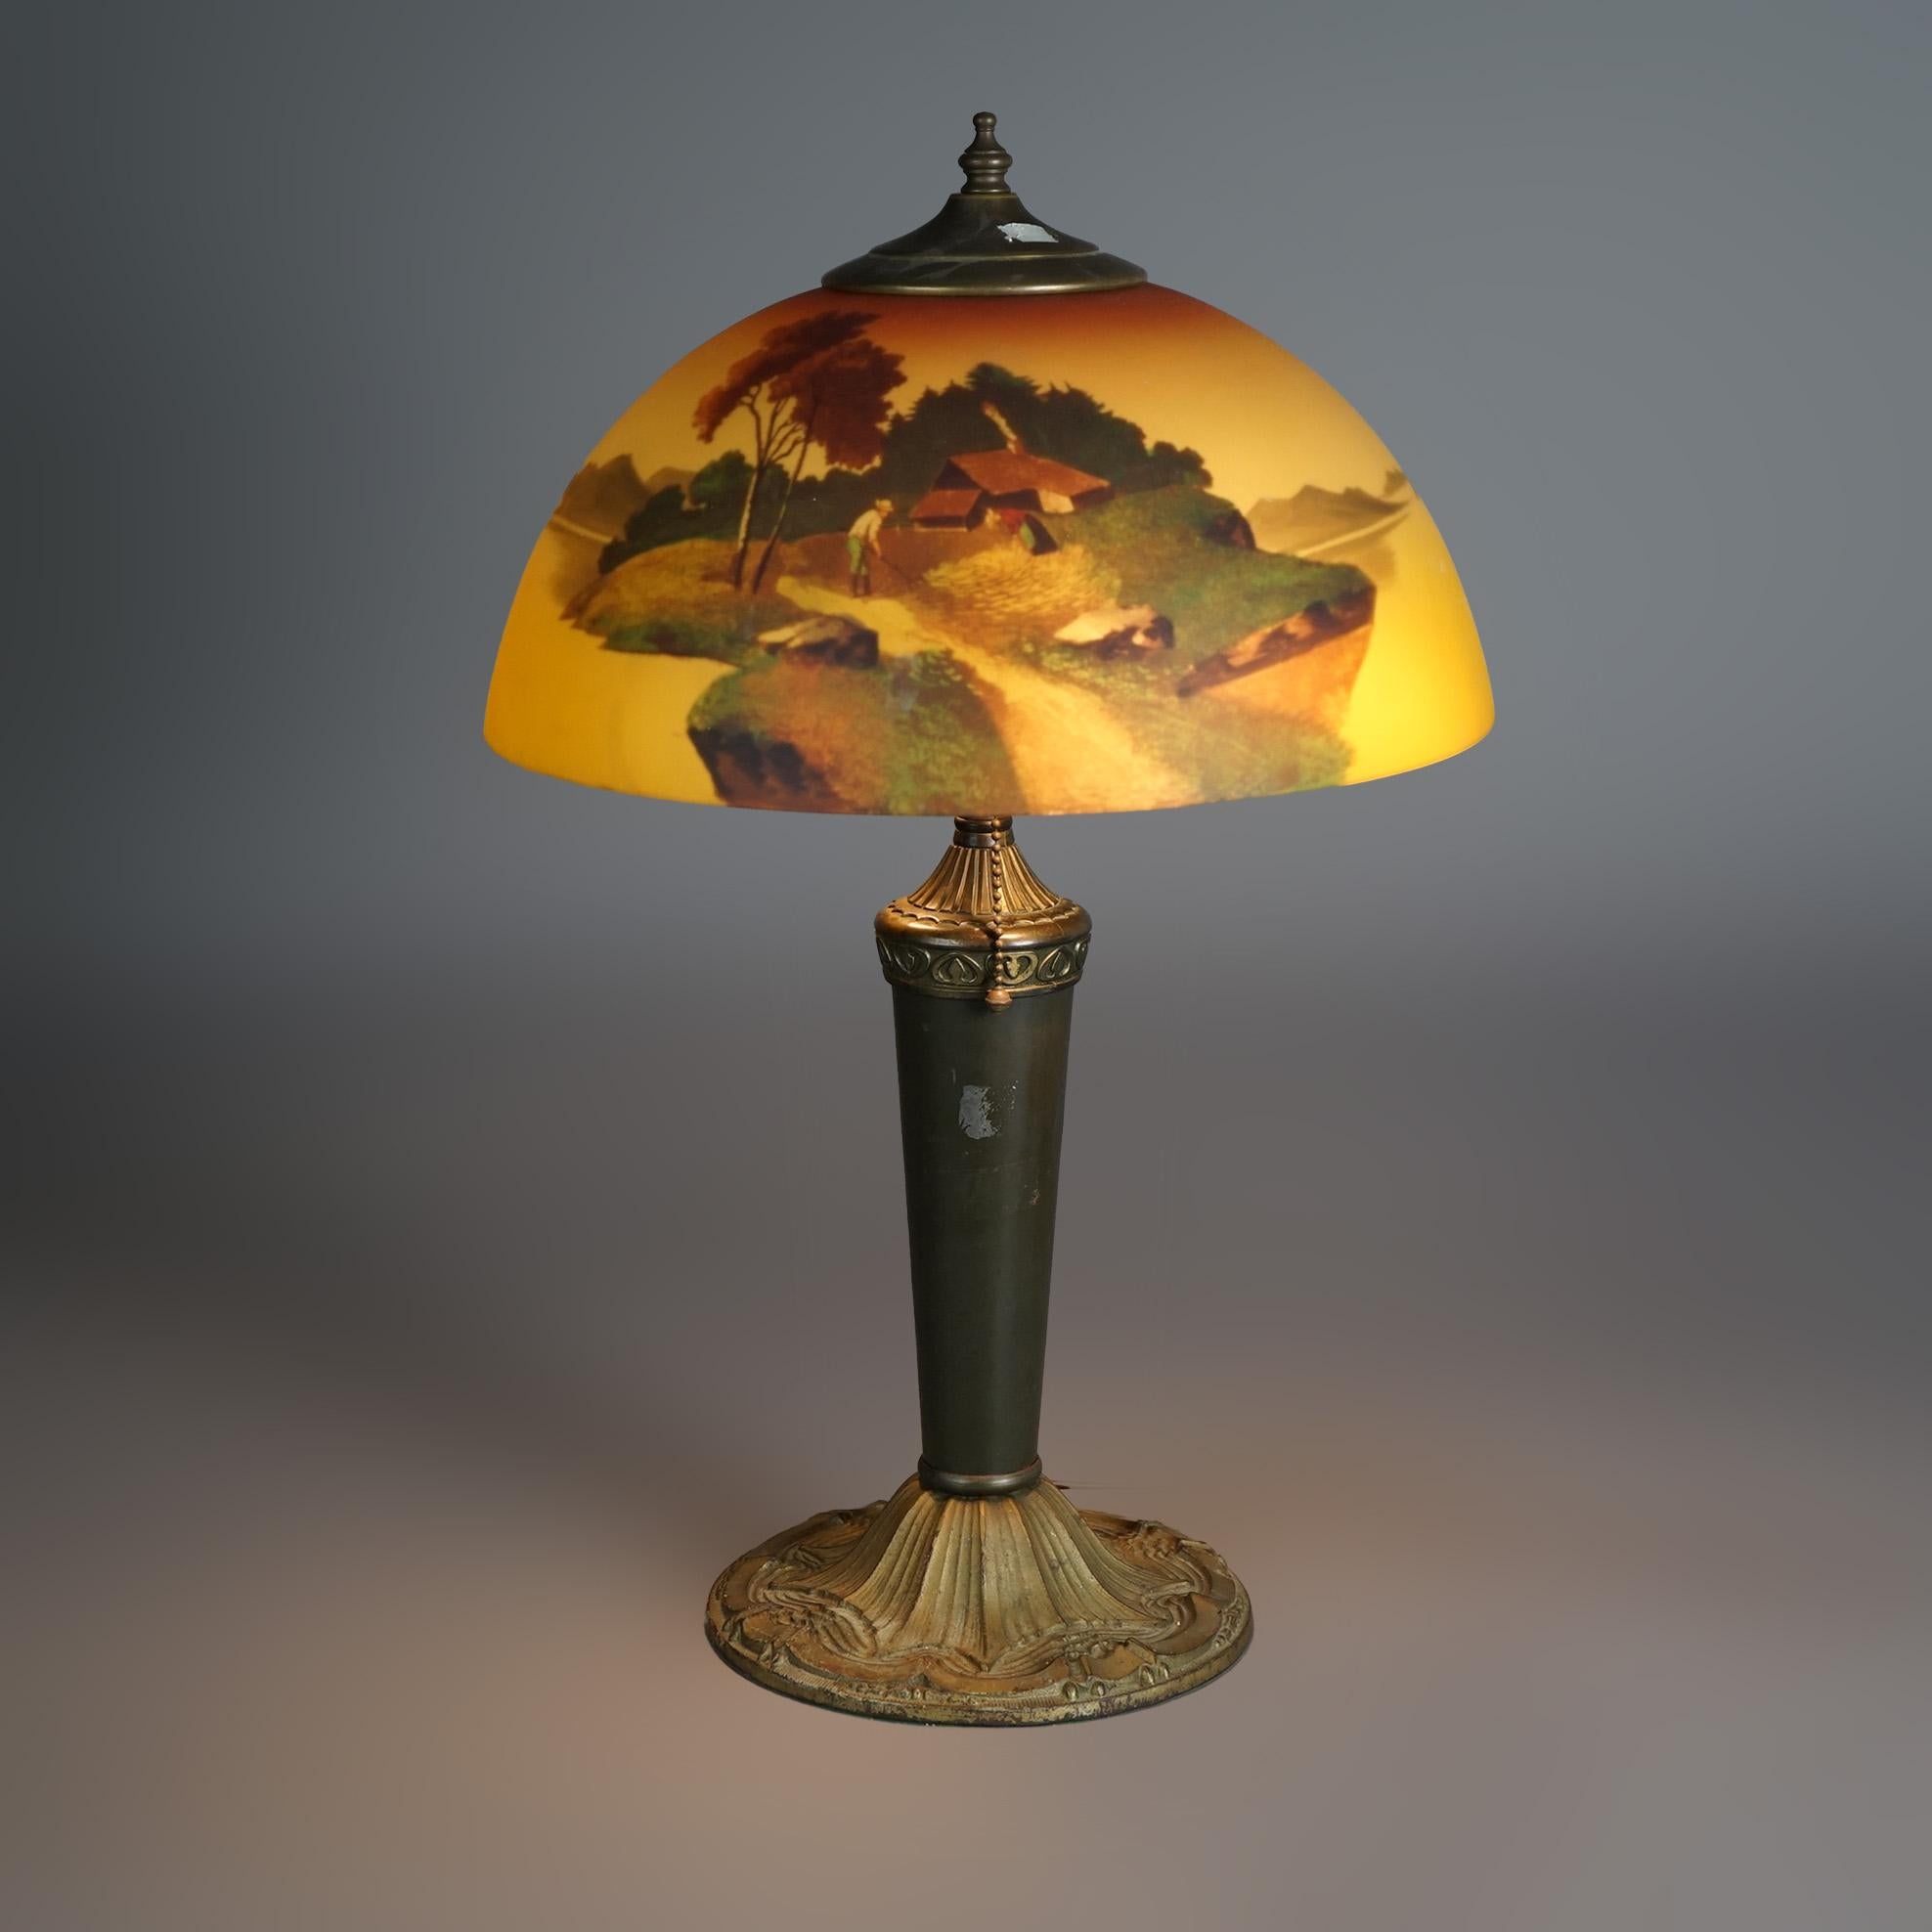 Ancienne lampe de table Phoenix avec abat-jour en verre en forme de dôme peint à l'envers avec une scène de paysage peinte à la main sur une base en forme d'urne coulée à double douille avec une finition bronzée, vers 1920.

Mesures - 21,5 